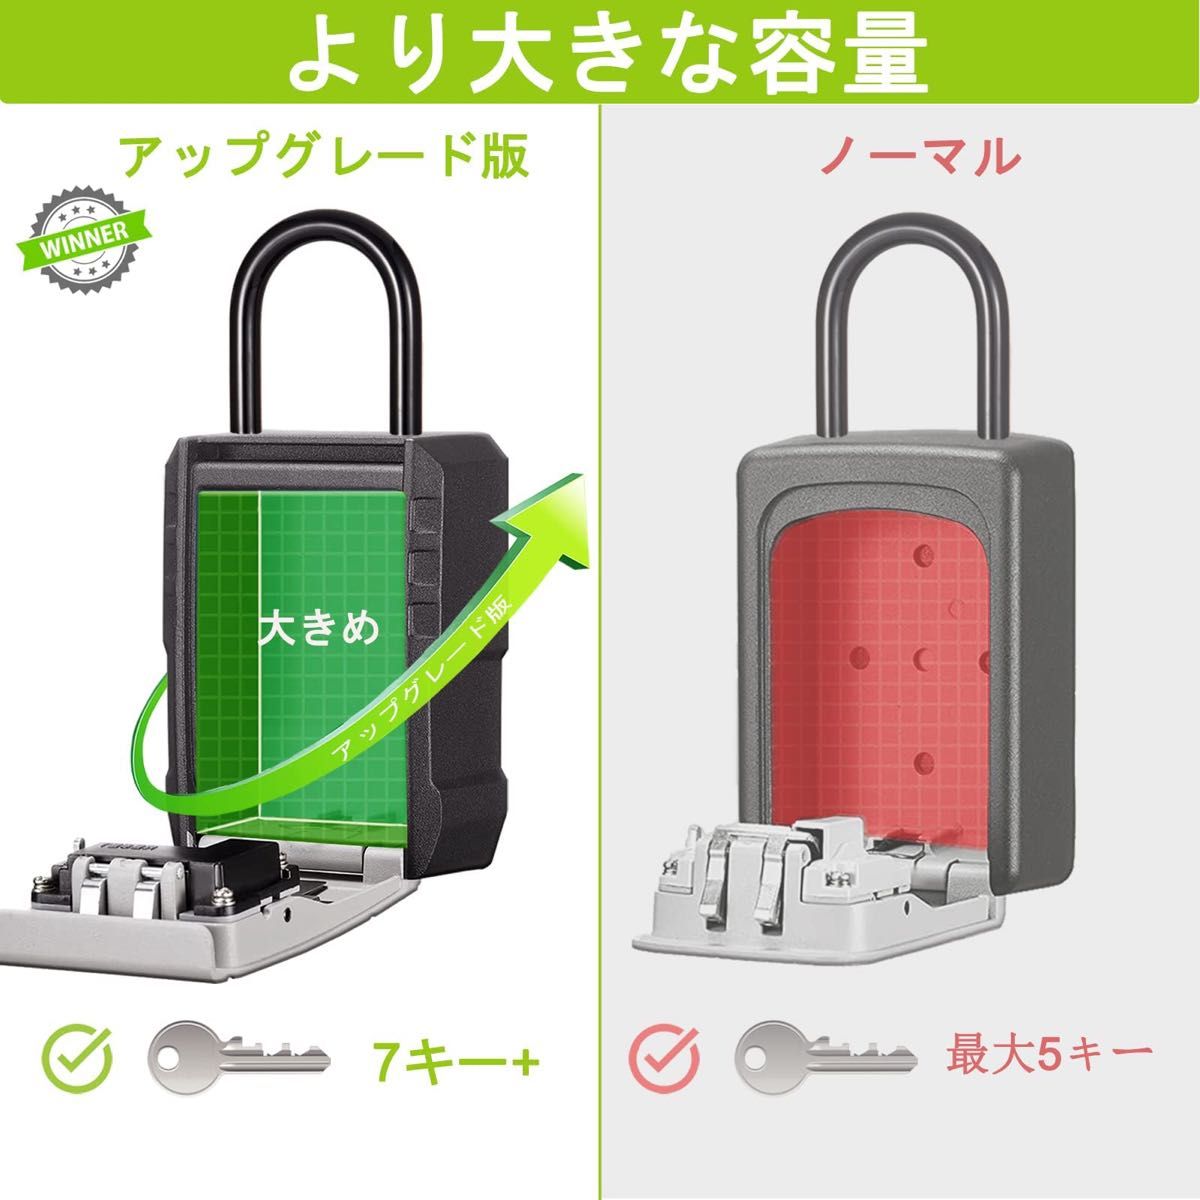 キーボックス 暗証番号 鍵 収納ボックス 4桁ダイヤル式 大容量 防犯 盗難防止 日本語説明書付き